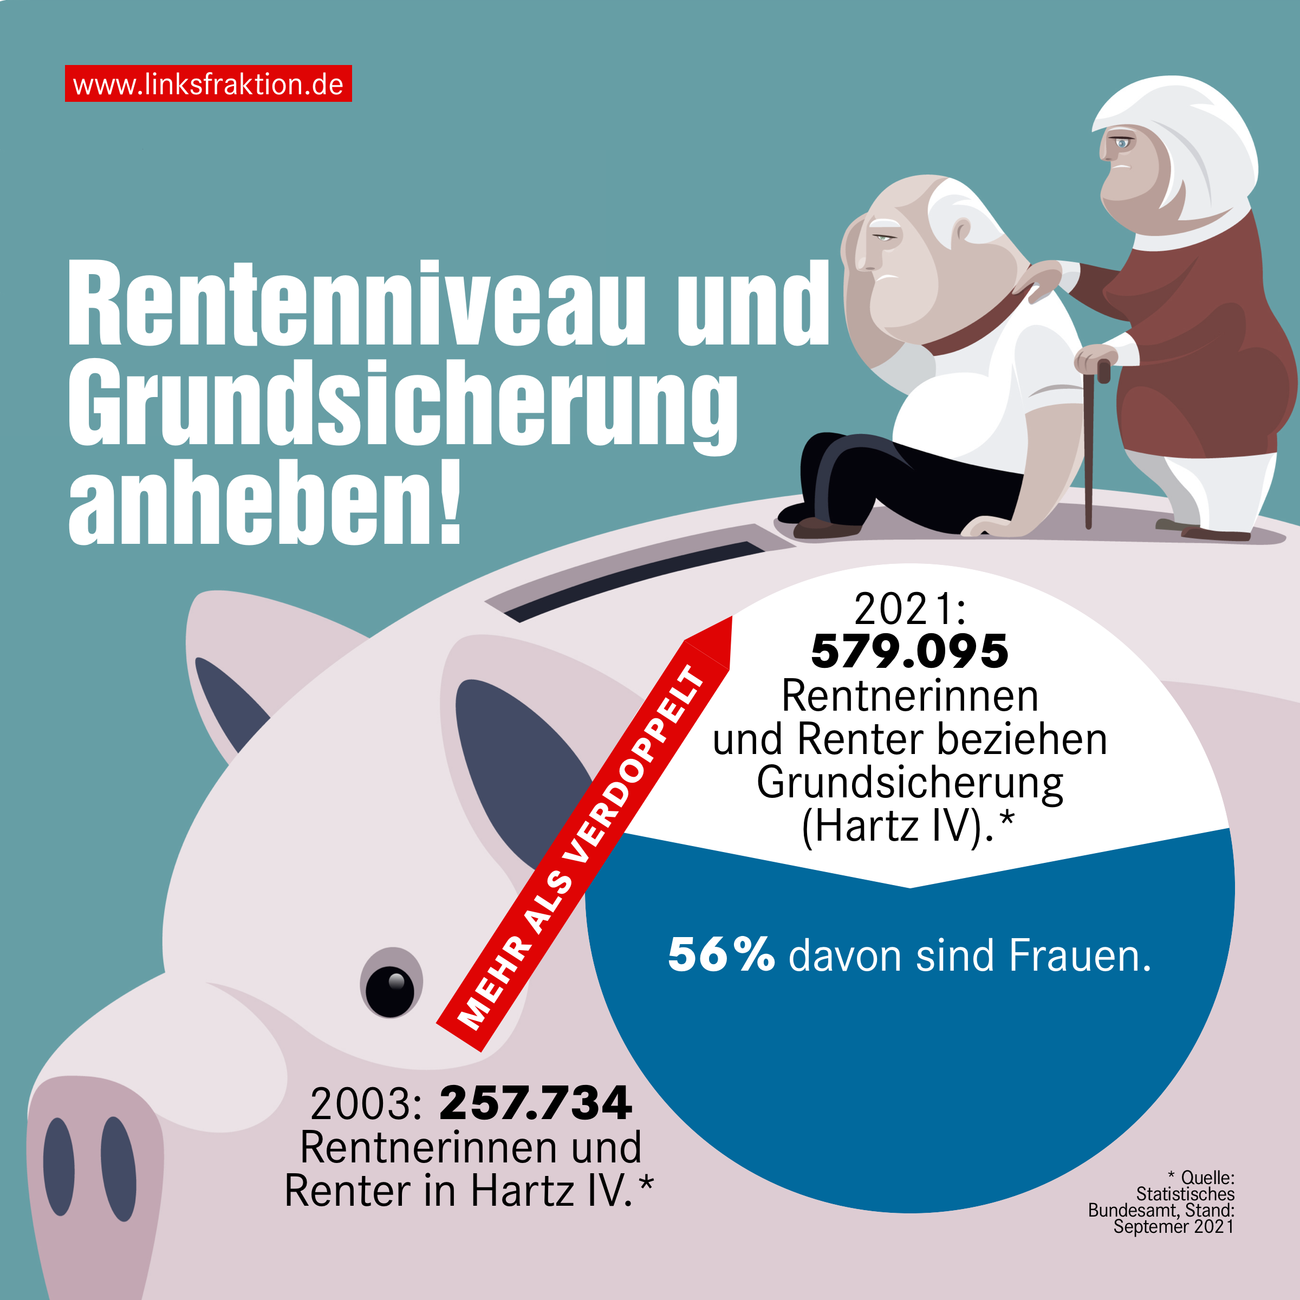 579.095 #Rentner sind auf #HartzIV angewiesen, mehr als doppelt so viele wie 2003, 56% davon Frauen. Rentenniveau und Grundsicherung anheben!